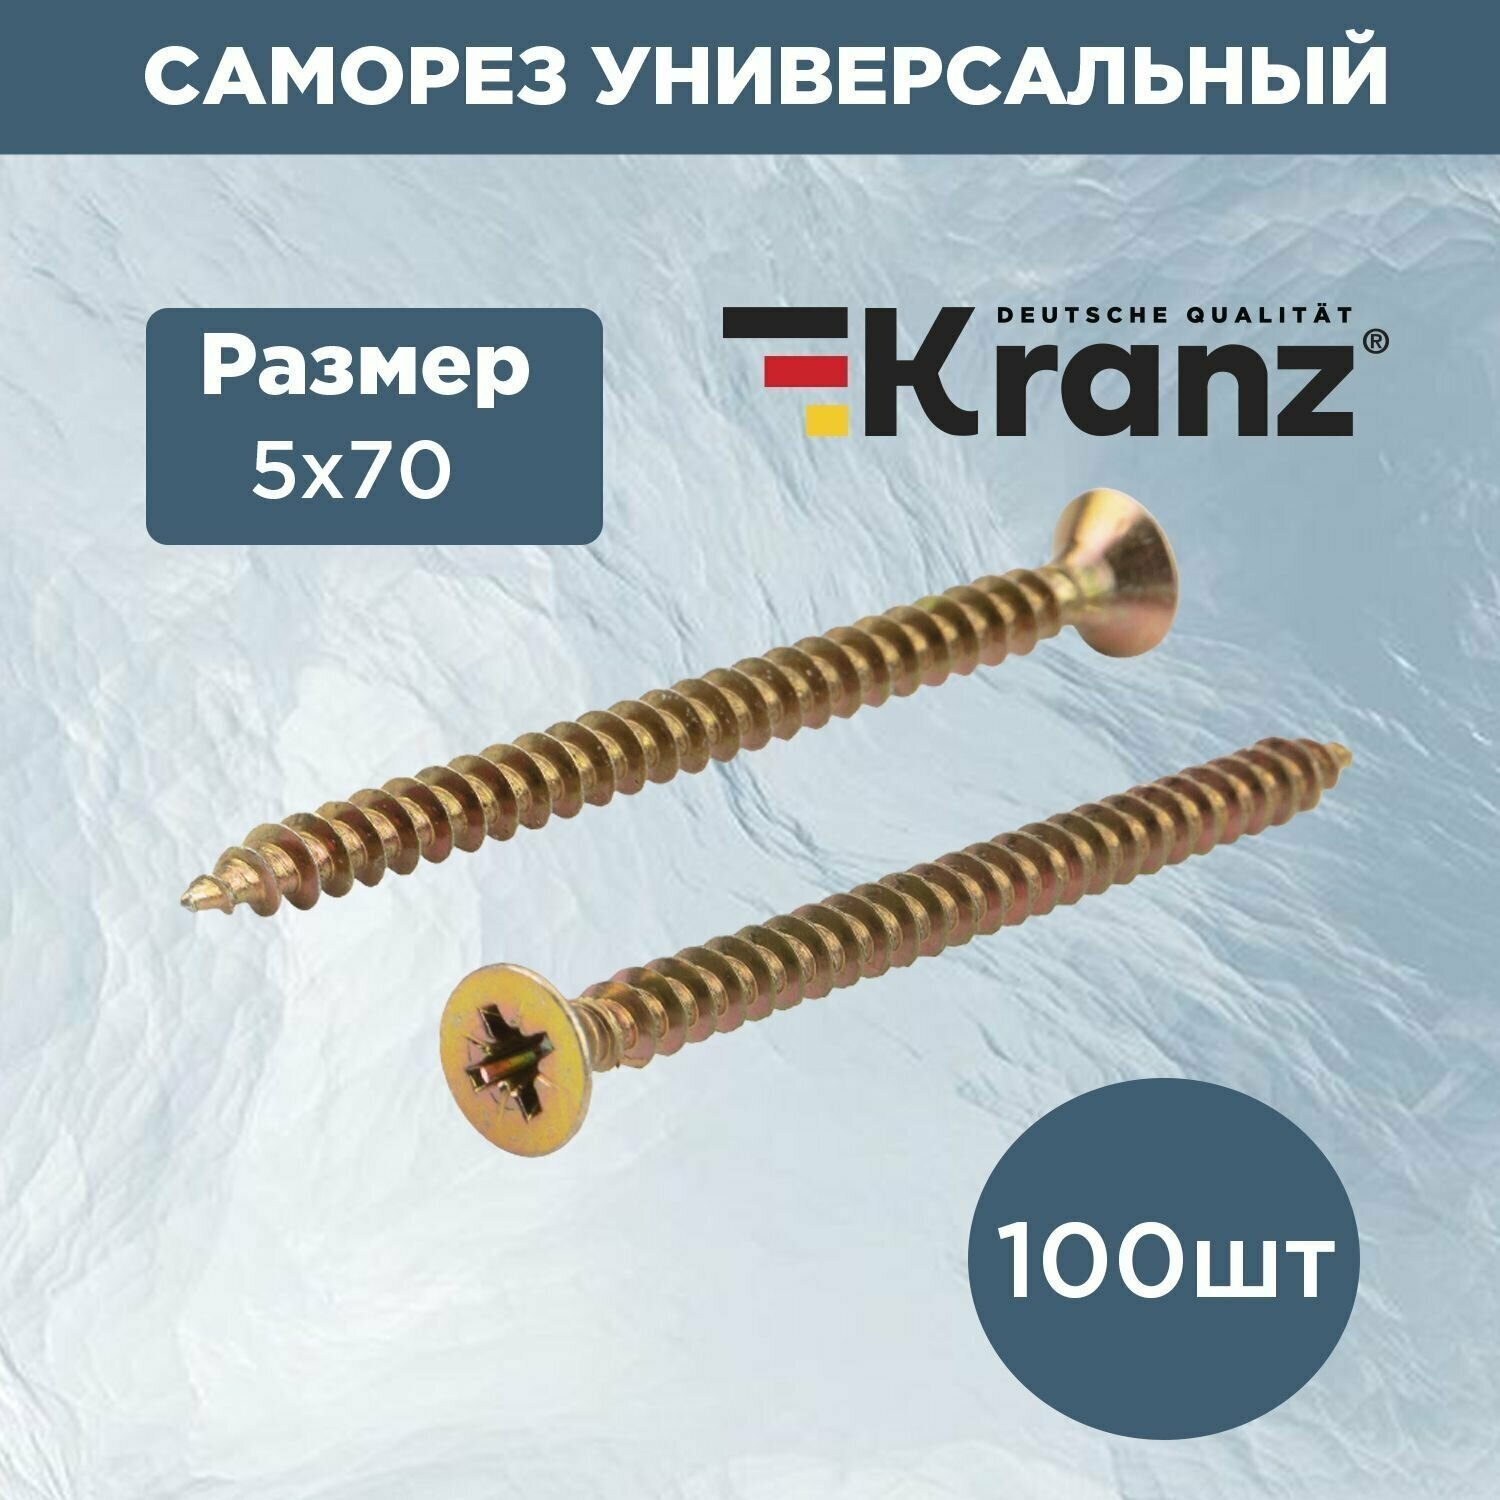 Саморез универсальный для дерева и металла KRANZ 5х70, с противокоррозионным покрытием из желтого цинка, короб 100 шт.